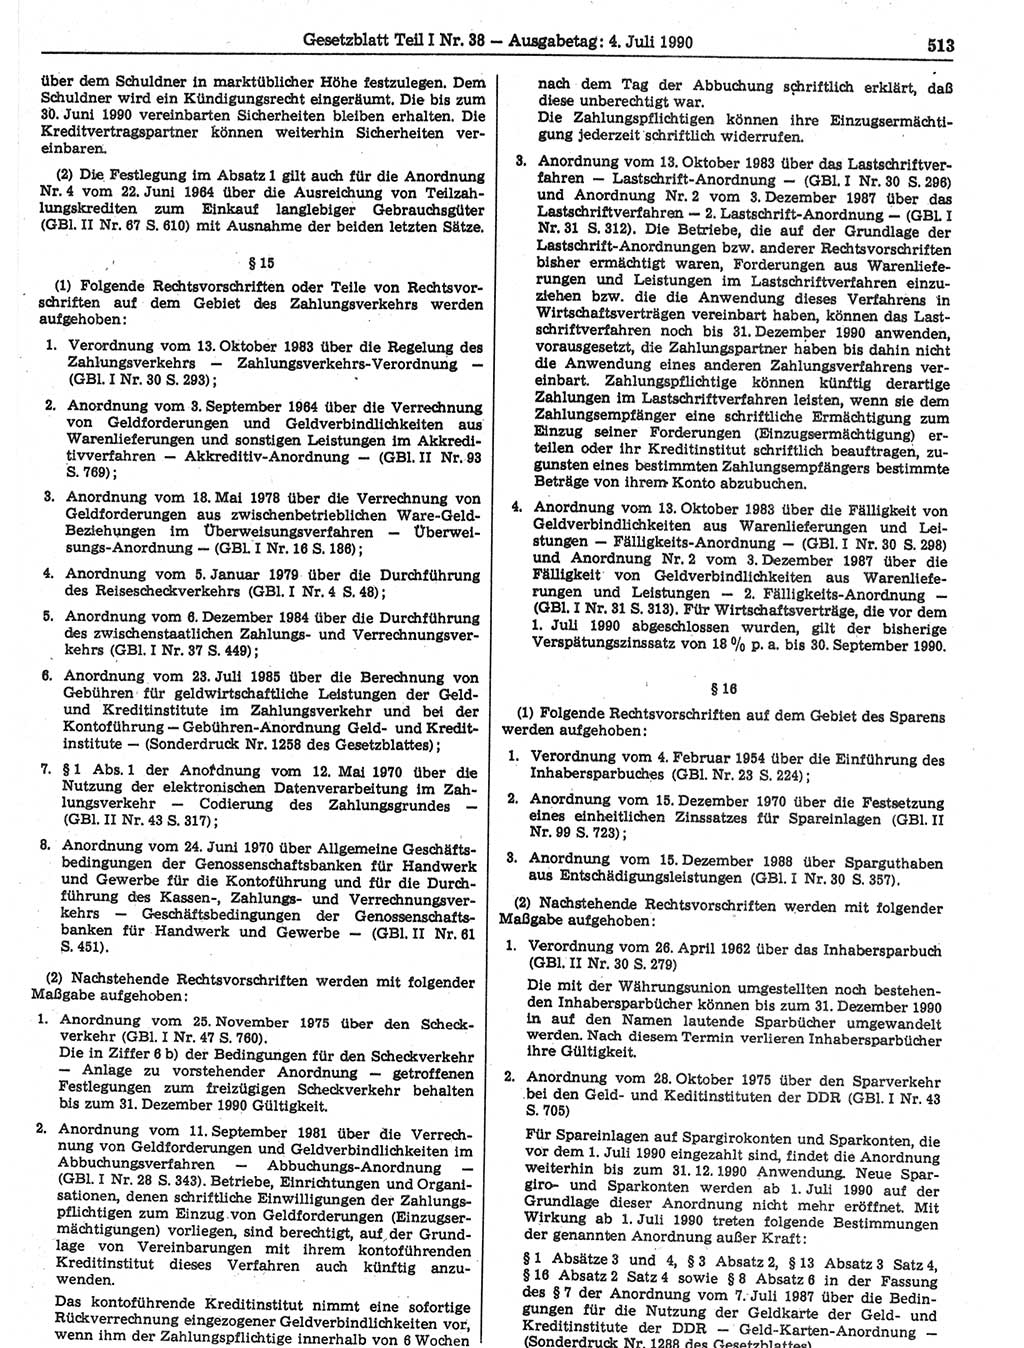 Gesetzblatt (GBl.) der Deutschen Demokratischen Republik (DDR) Teil Ⅰ 1990, Seite 513 (GBl. DDR Ⅰ 1990, S. 513)